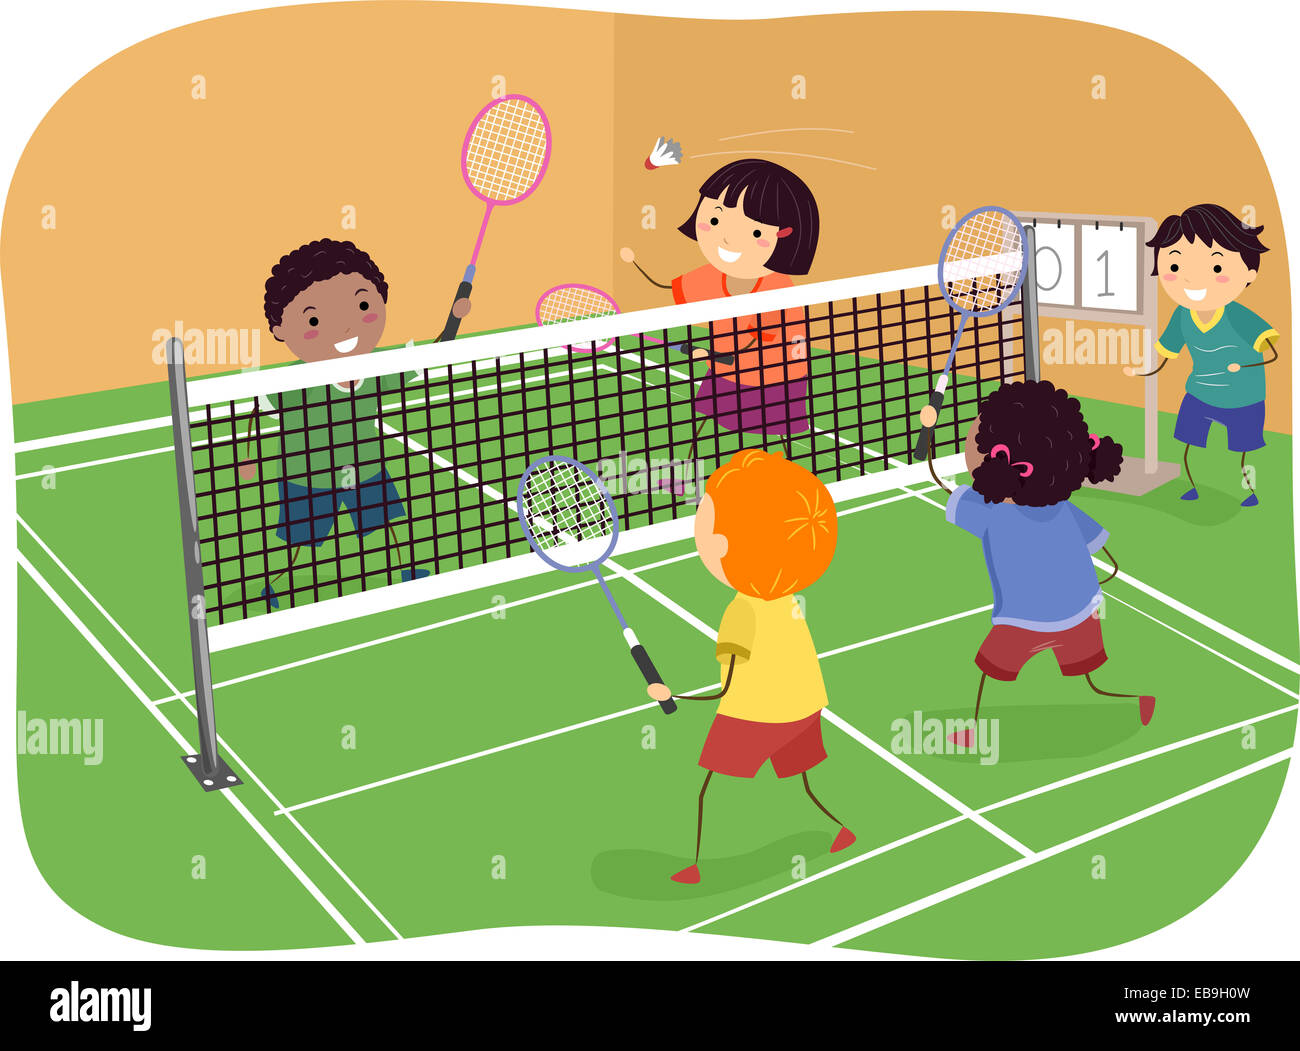 Abbildung mit Kinder spielen Badminton Doppel Stockfotografie - Alamy